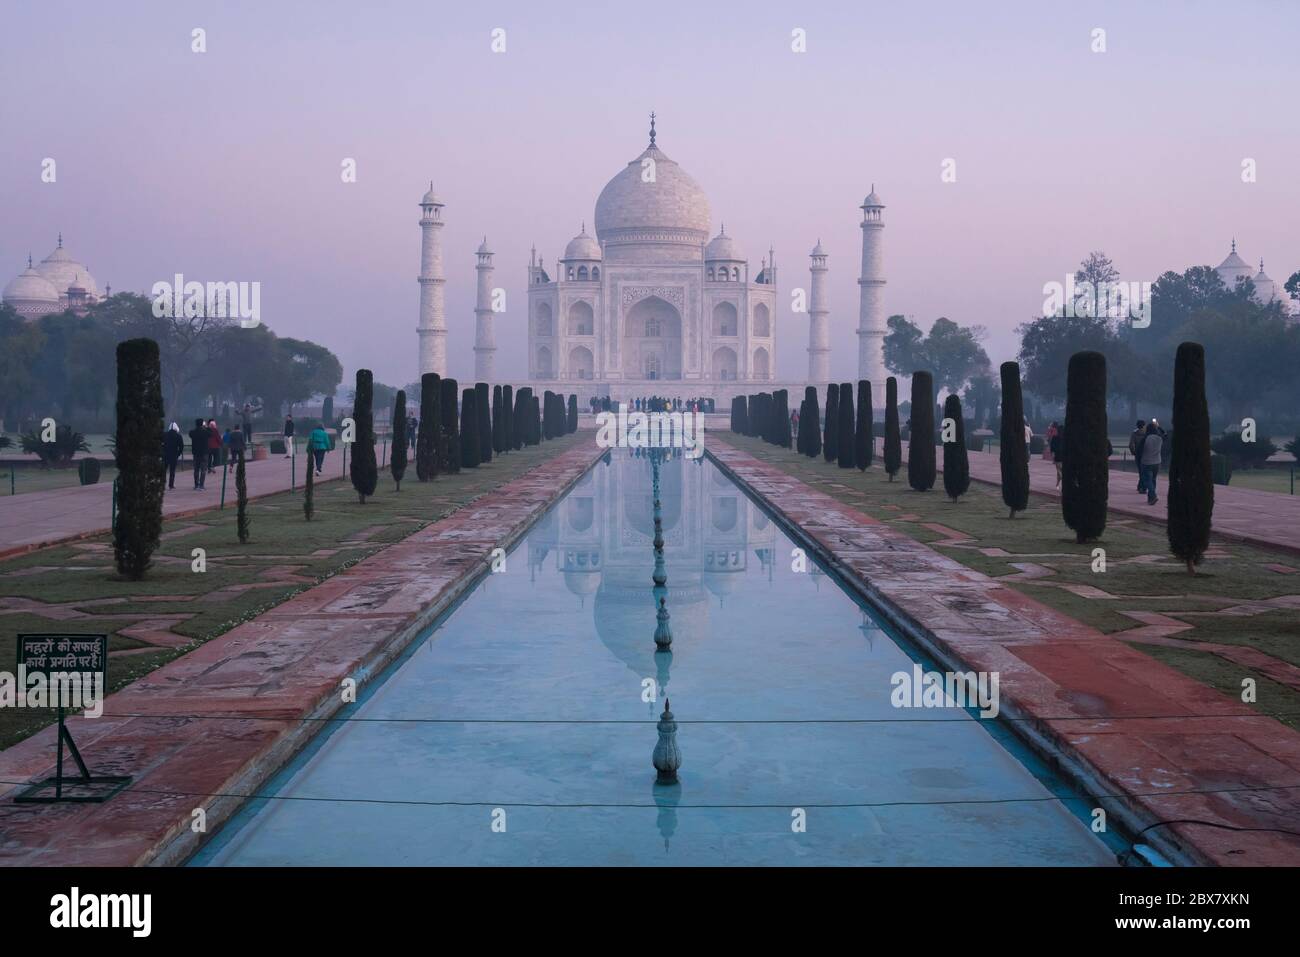 Taj Mahal and reflecting pool in dawn mist in Agra, India Stock Photo